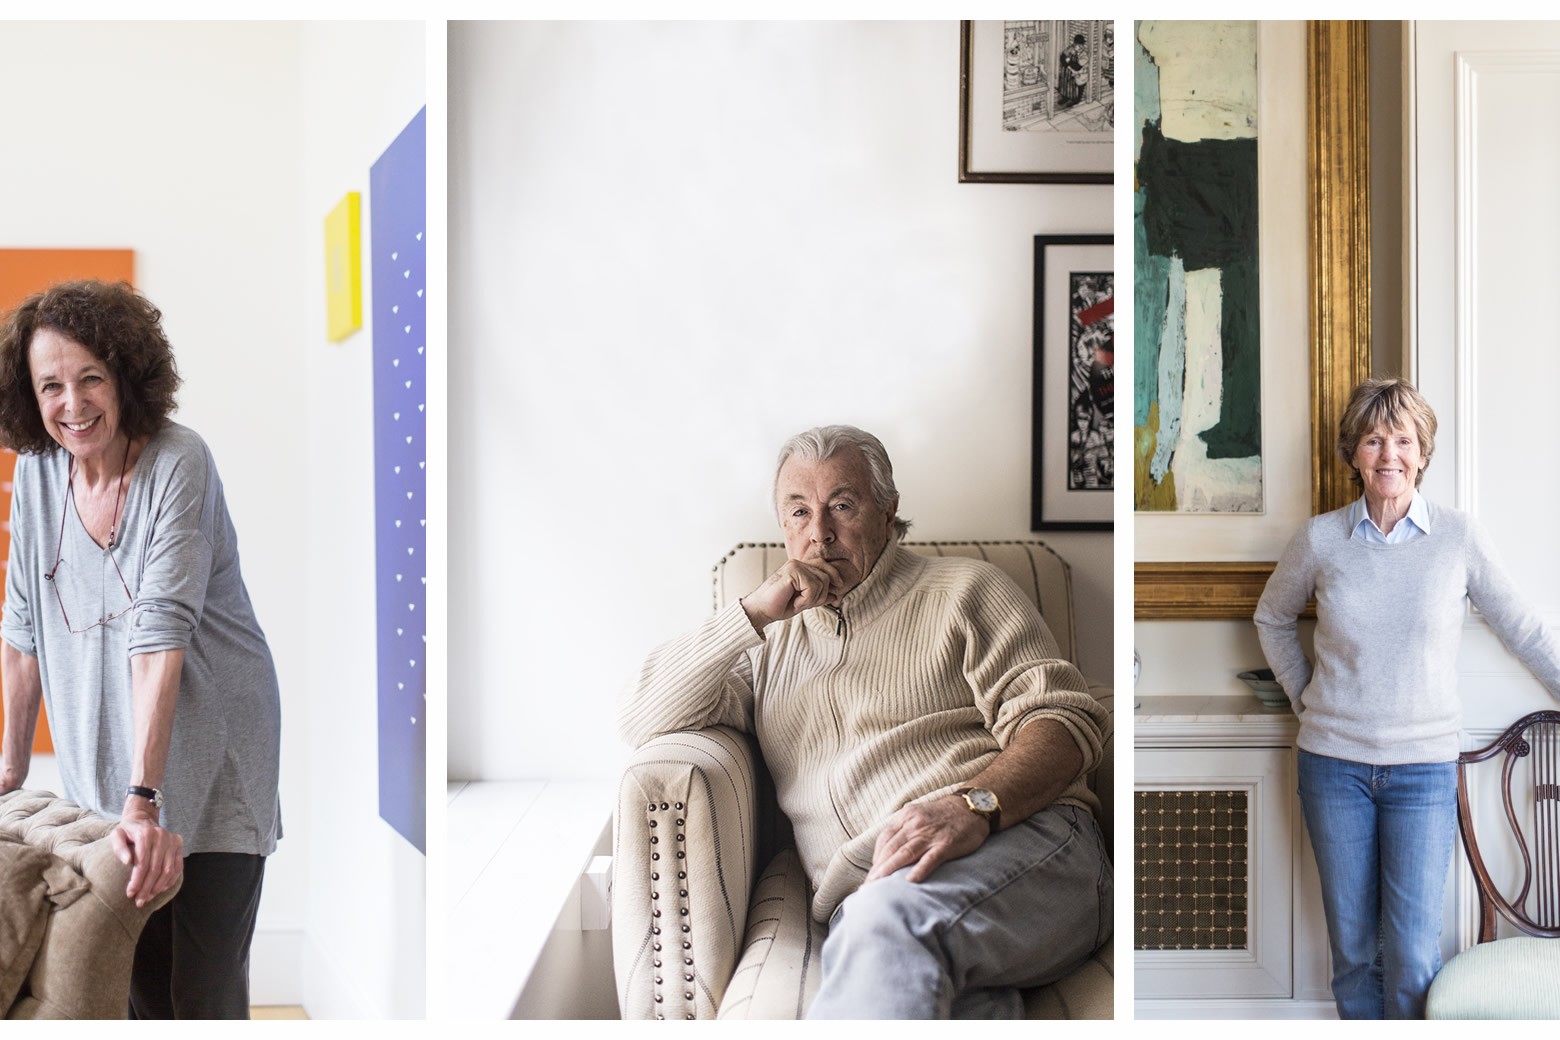 da sinistra: Tess Jaray, 77 anni, pittrice e stampatrice inglese; Terry O'Neill, 76 anni, fotografo; Jennifer Murray, 74 anni, aviatrice e scrittrice